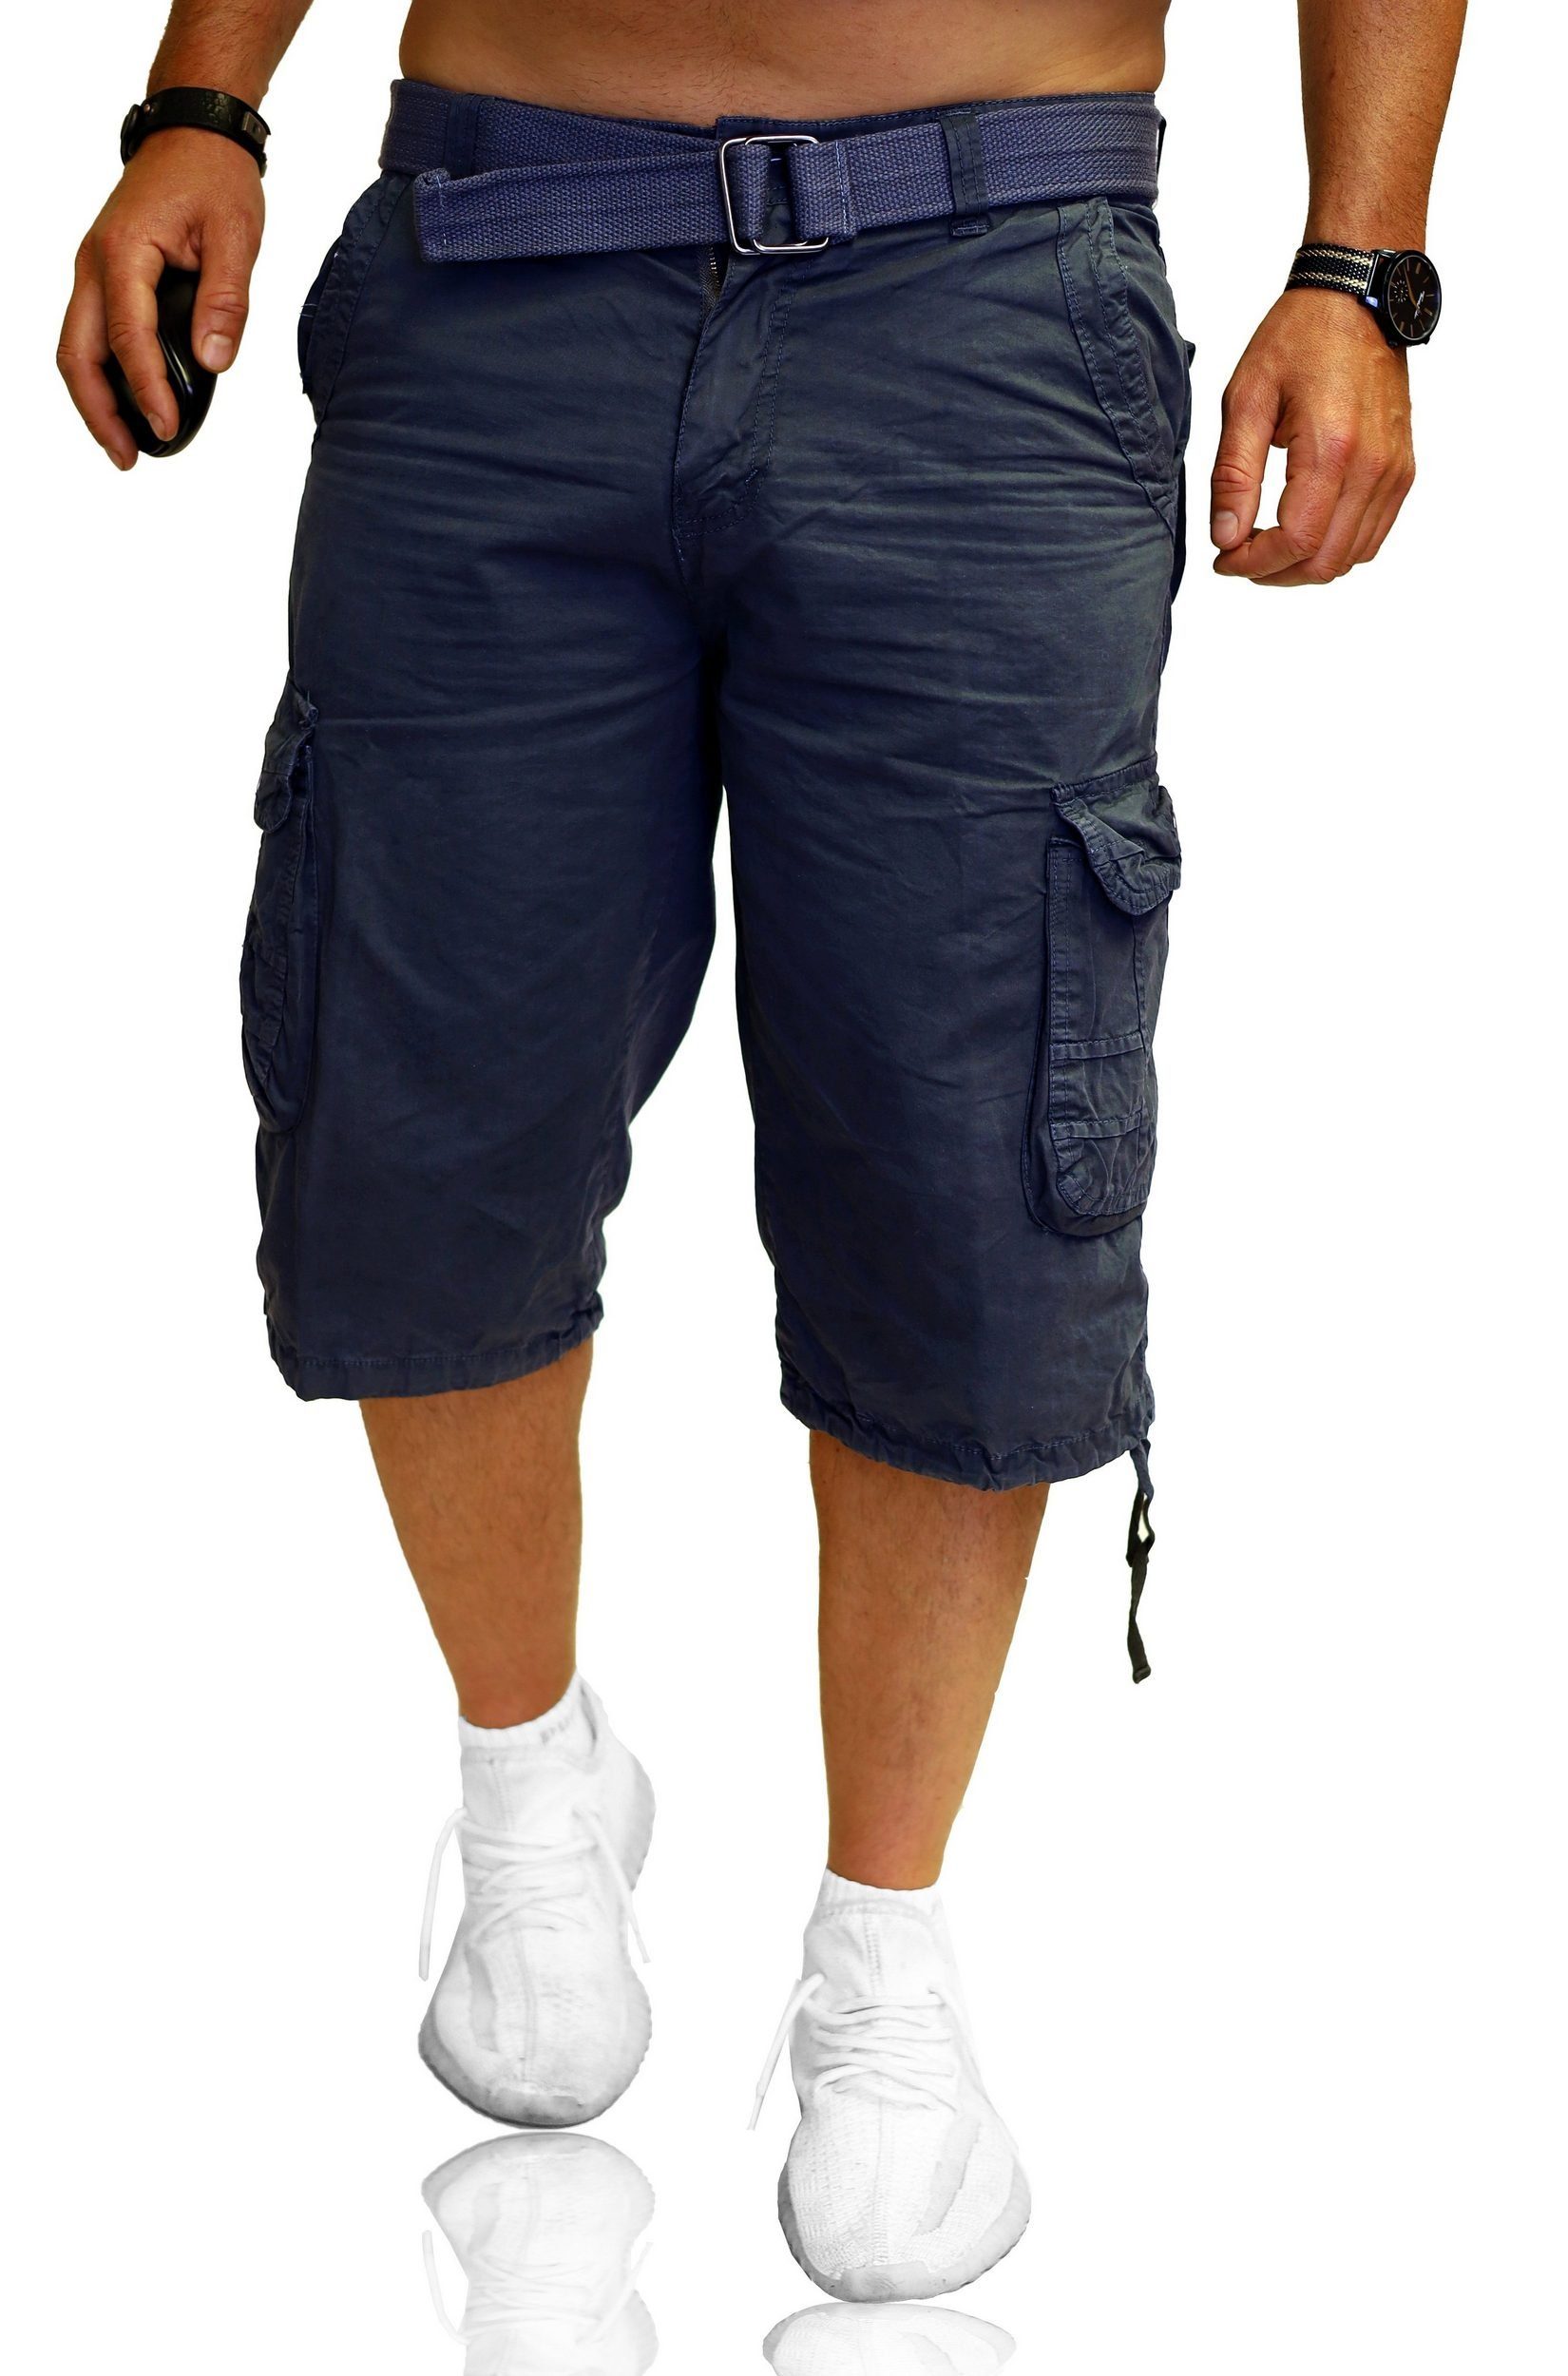 RMK Cargoshorts Herren Short Shorts Bermuda kurze Hose Cargos + Gürtel aus Baumwolle, in Unifarbe Grau